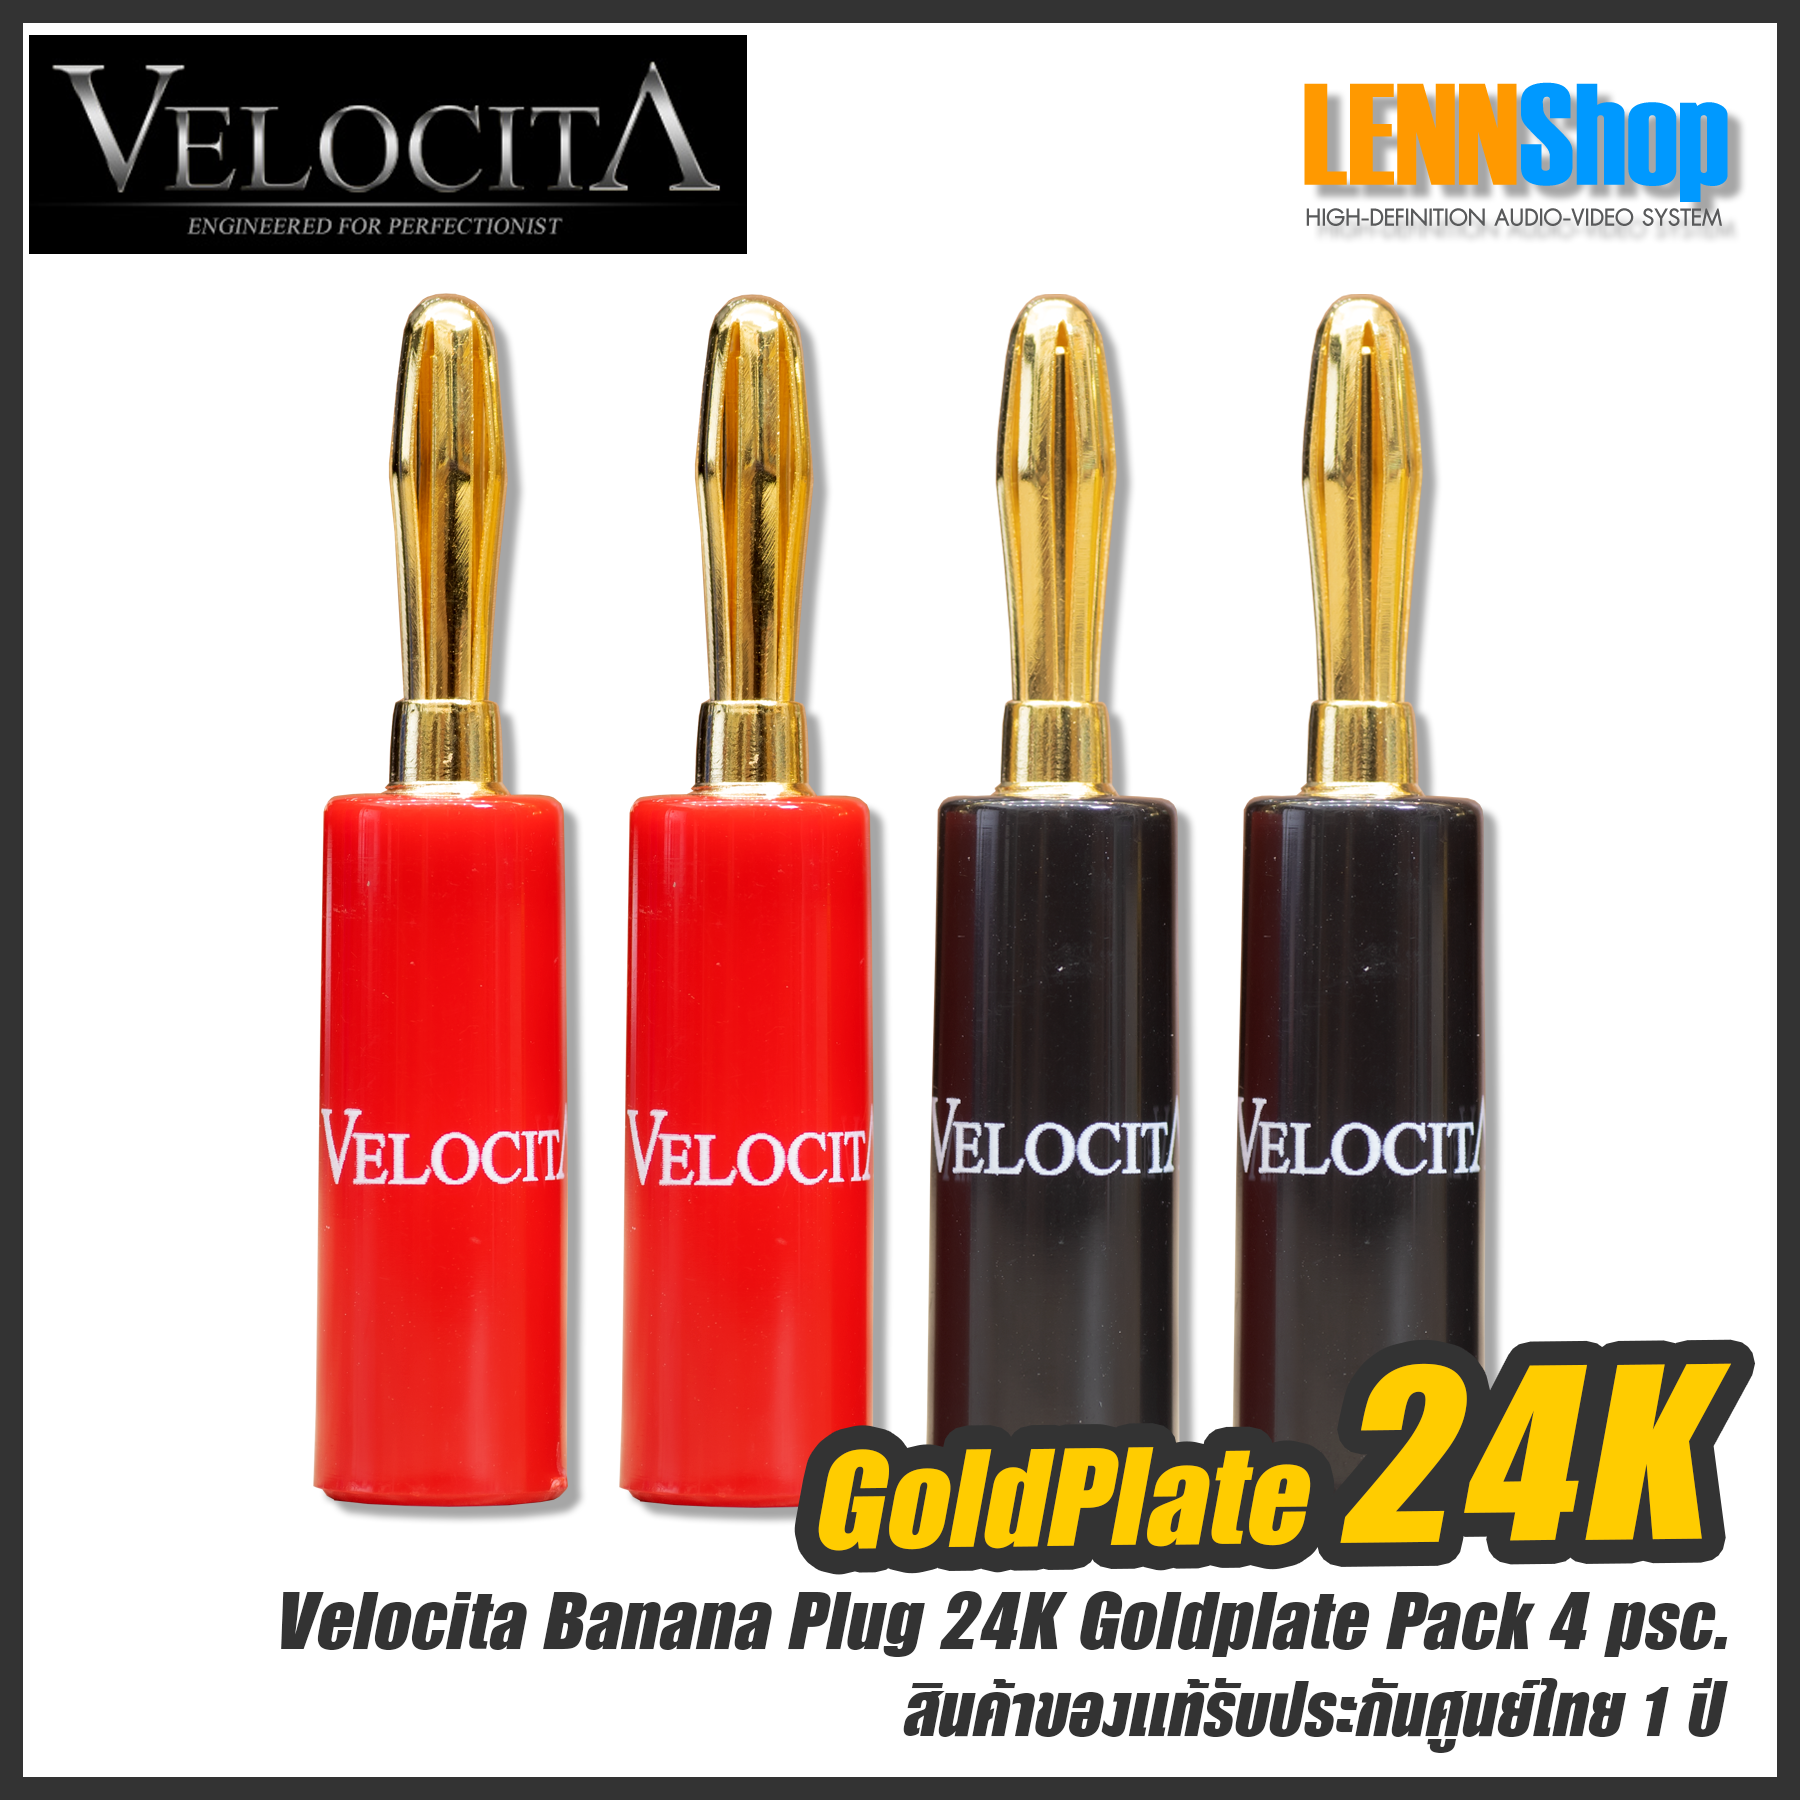 VELOCITA : Banana Speaker Plugs - GoldPlate 24K ทองแดงความบริสุทธิ์สูง OFC Pack 4 Each สินค้าของแท้ / Banana Velocita / LENNSHOP / Banana GoldPlate 24K